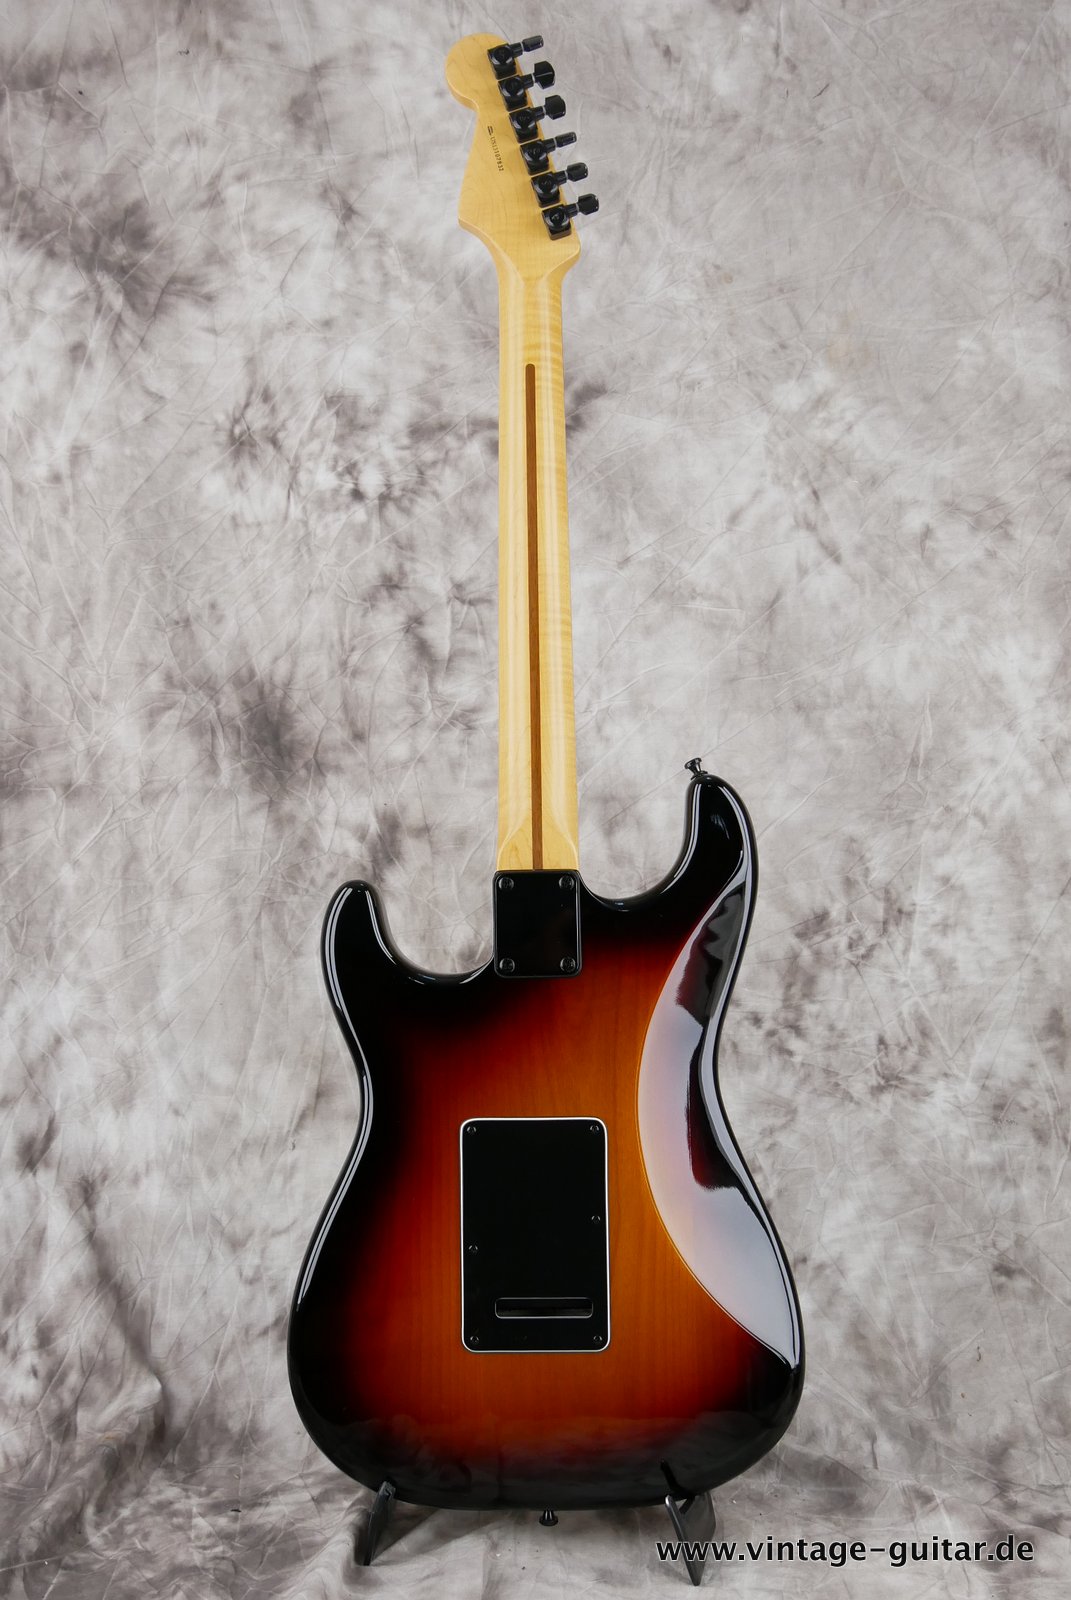 Fender-Stratocaster-2014-US-Standard-black-hardware-003.JPG